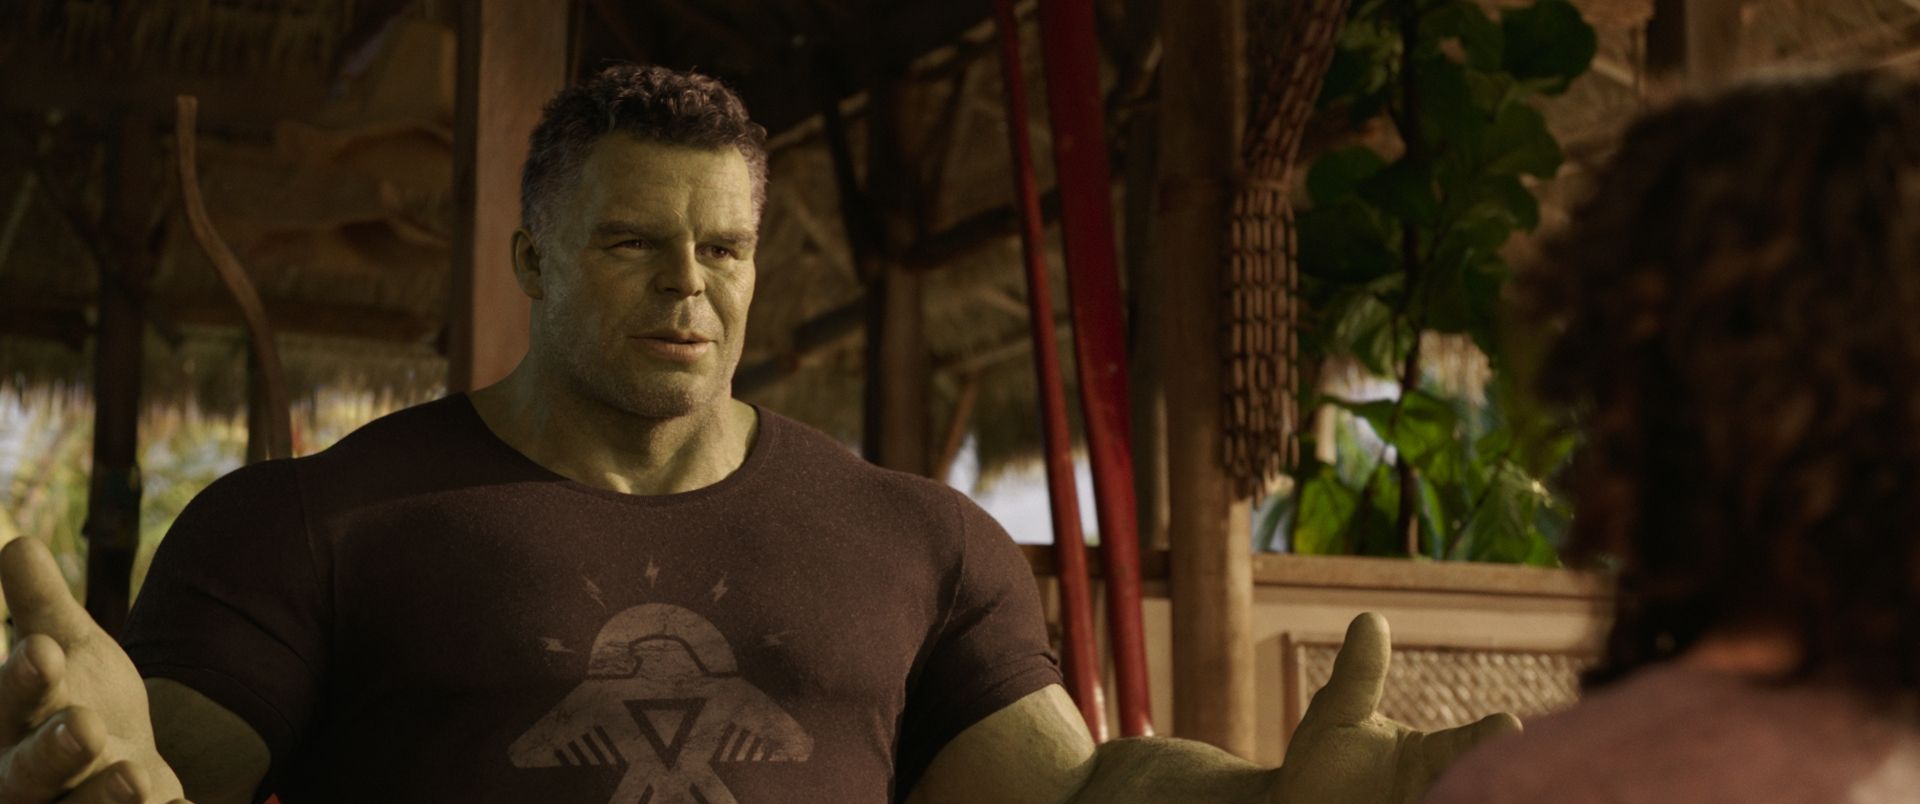 She-Hulk, tutto quello che c’è da sapere sulla serie Marvel in arrivo su Disney+